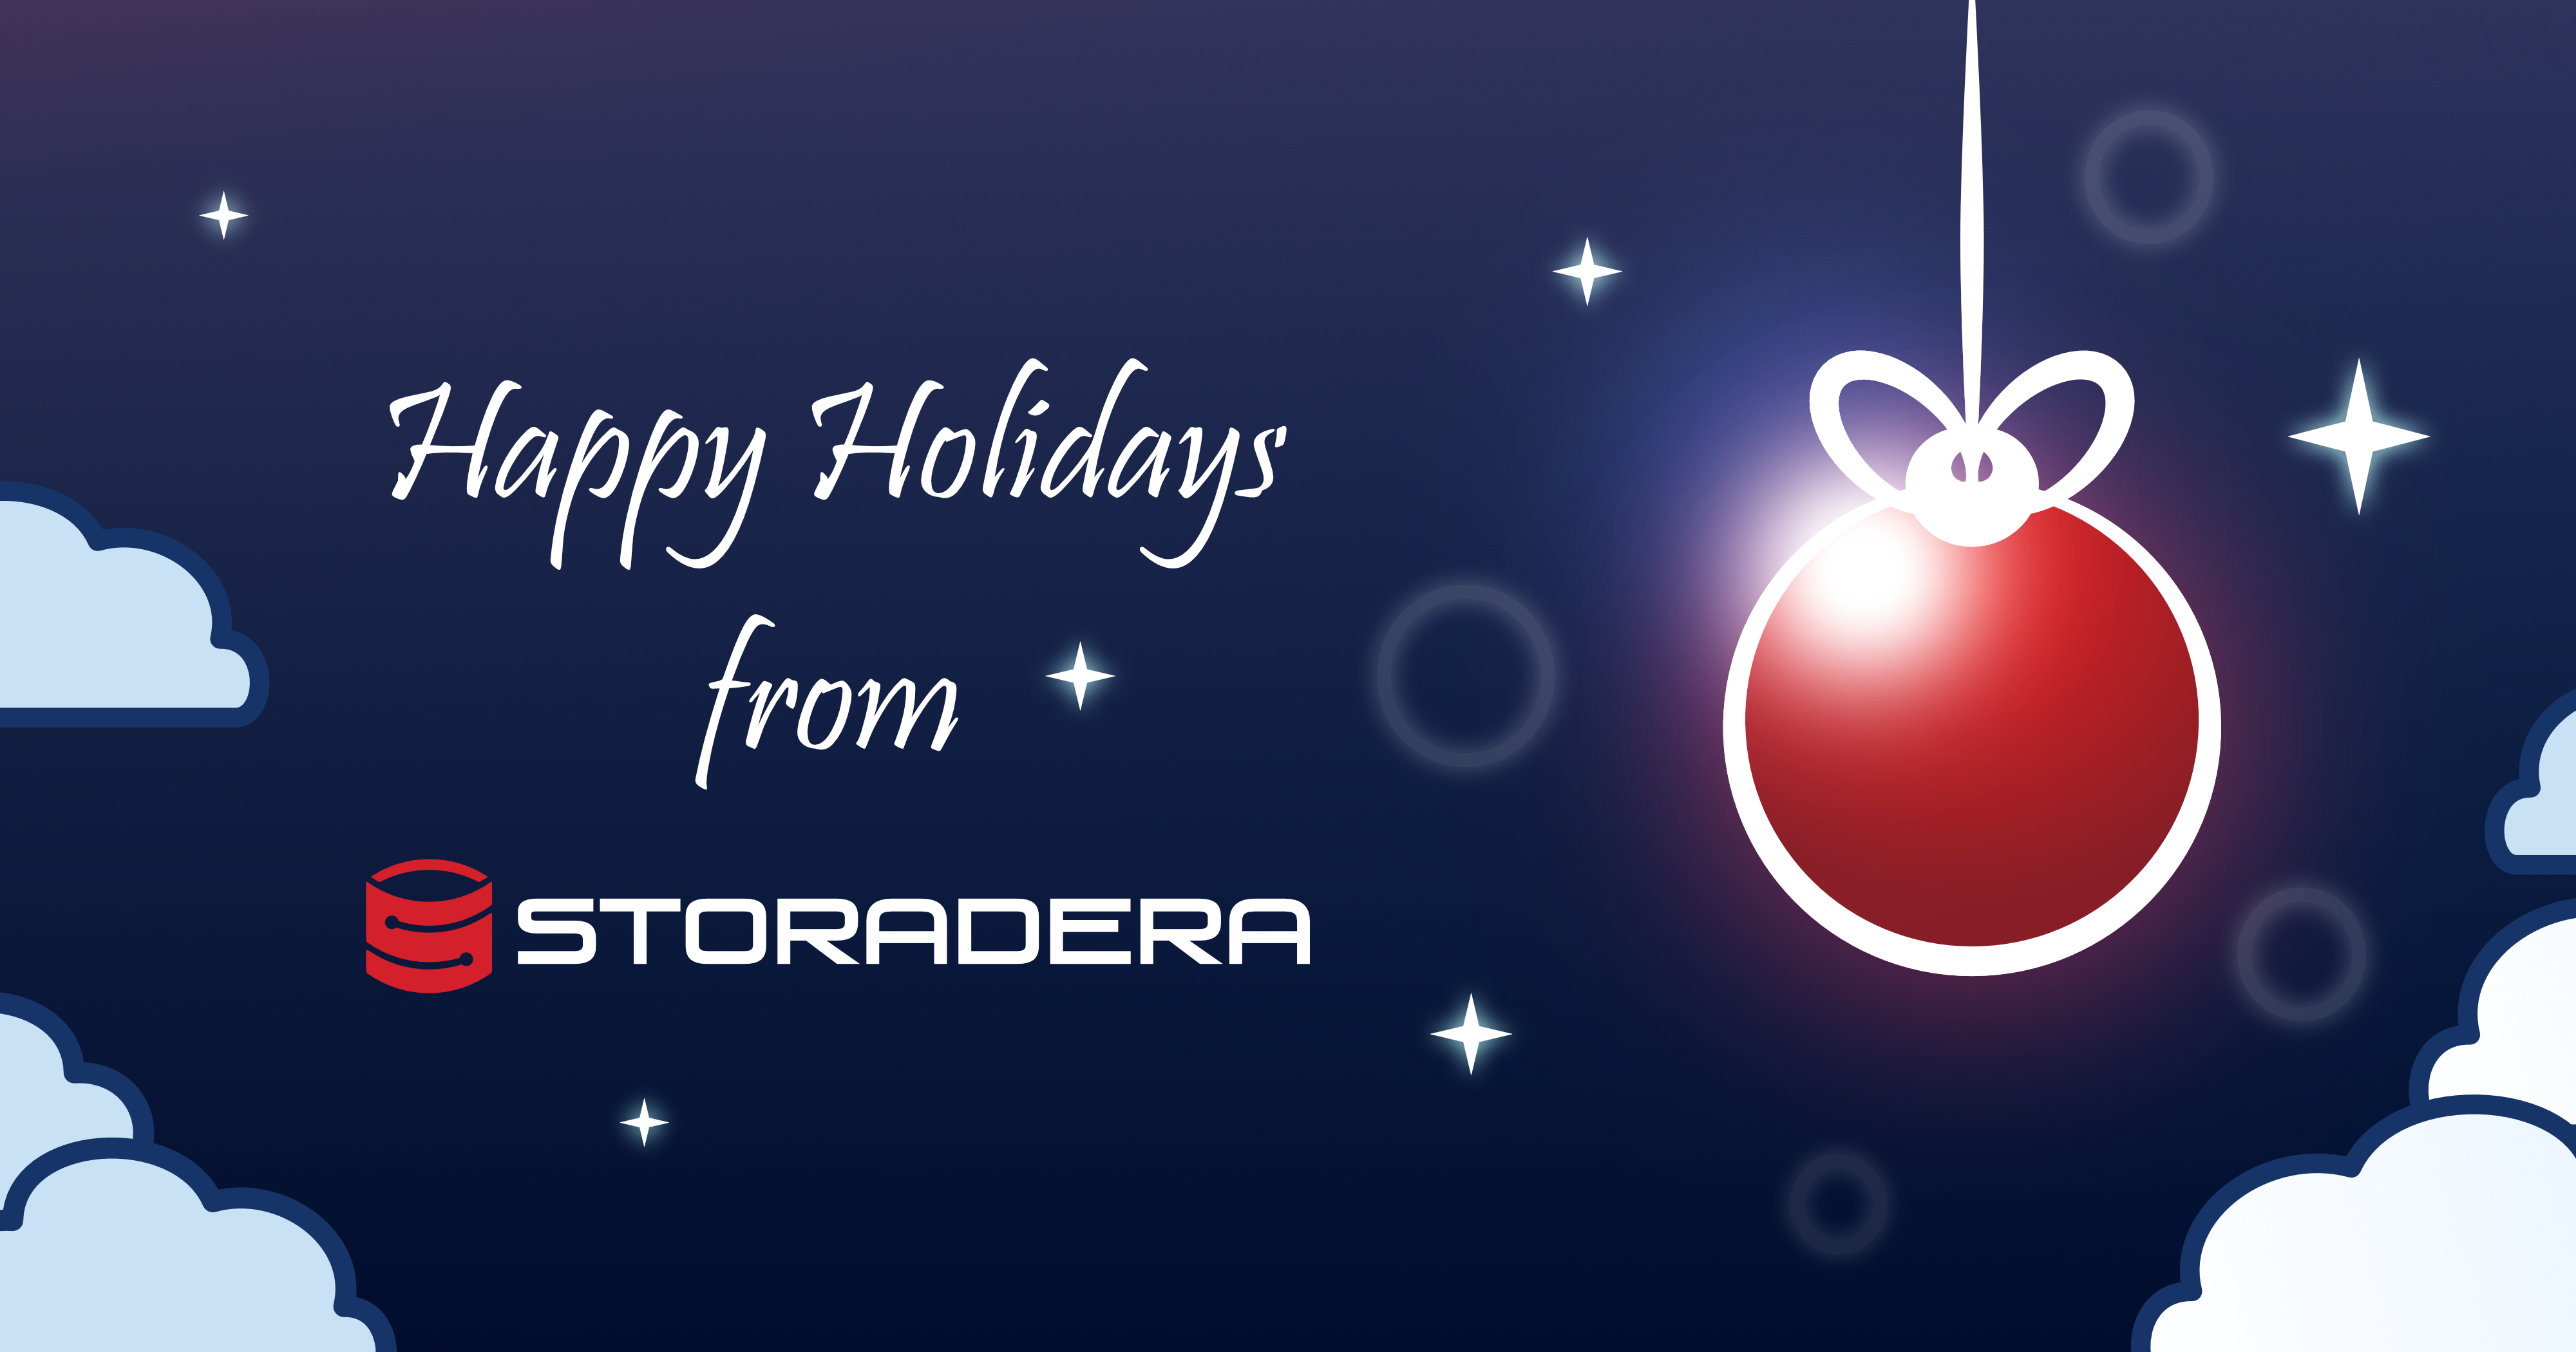 Happy Holidays from Storadera